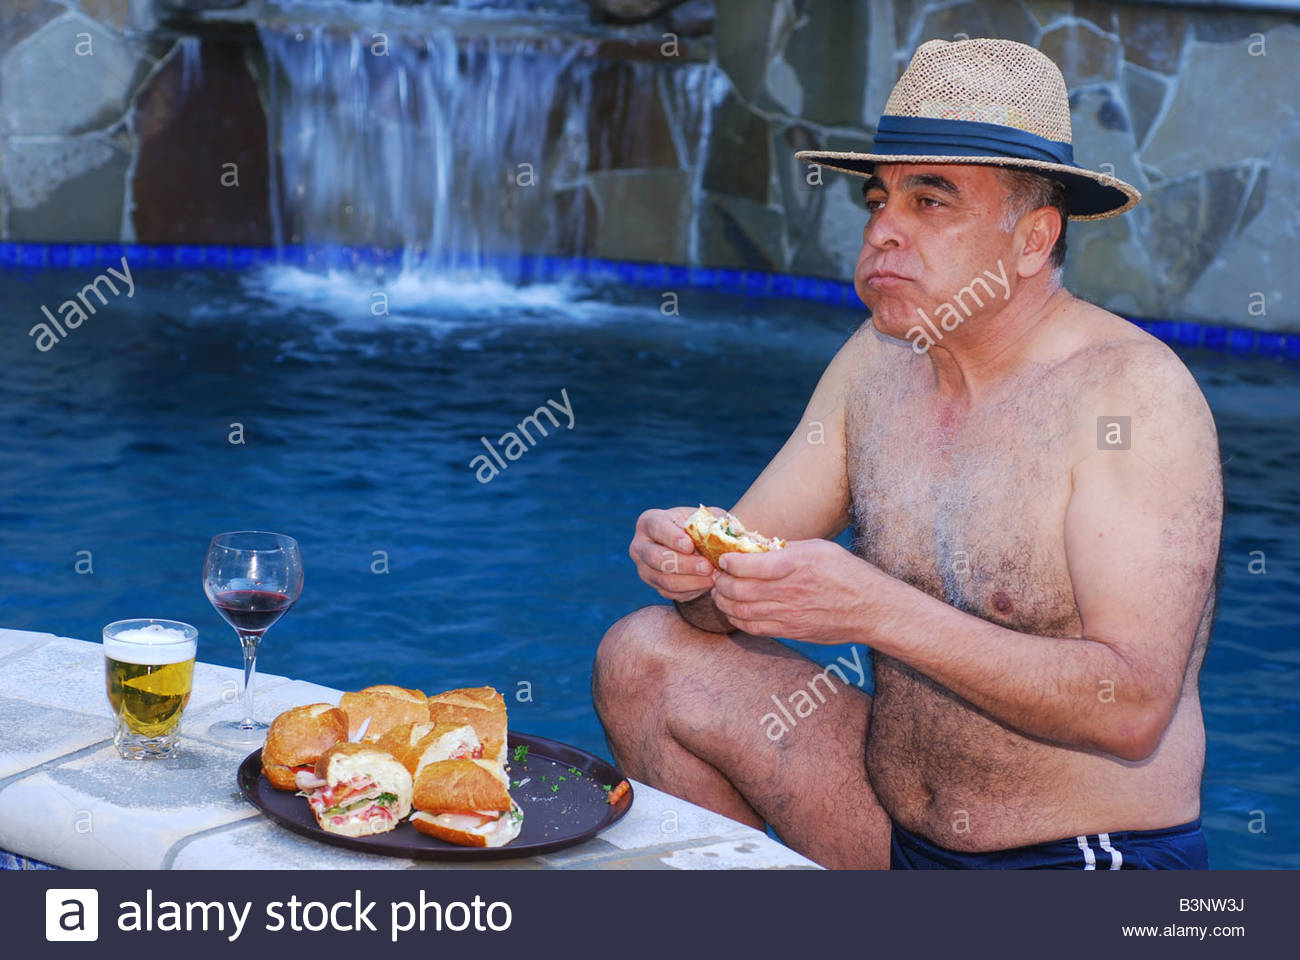 middle-eastern-man-enjoying-a-sub-sandwich-by-a-pool-at-a-resort-B3NW3J.jpg